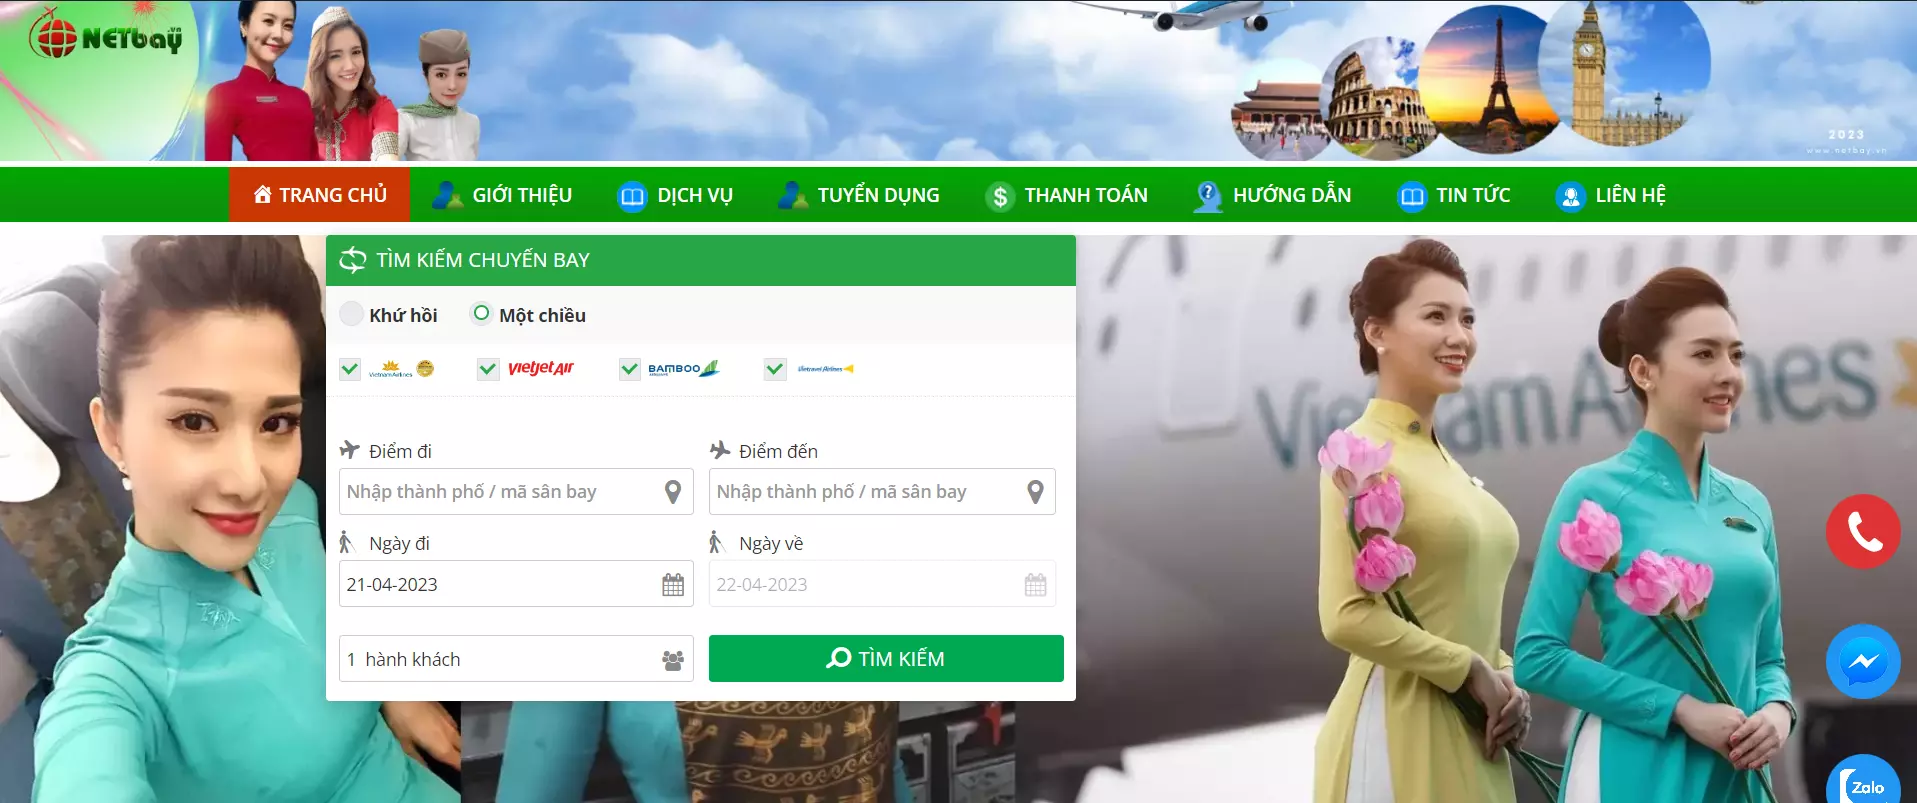 Đặt vé máy bay giá rẻ tại netbay